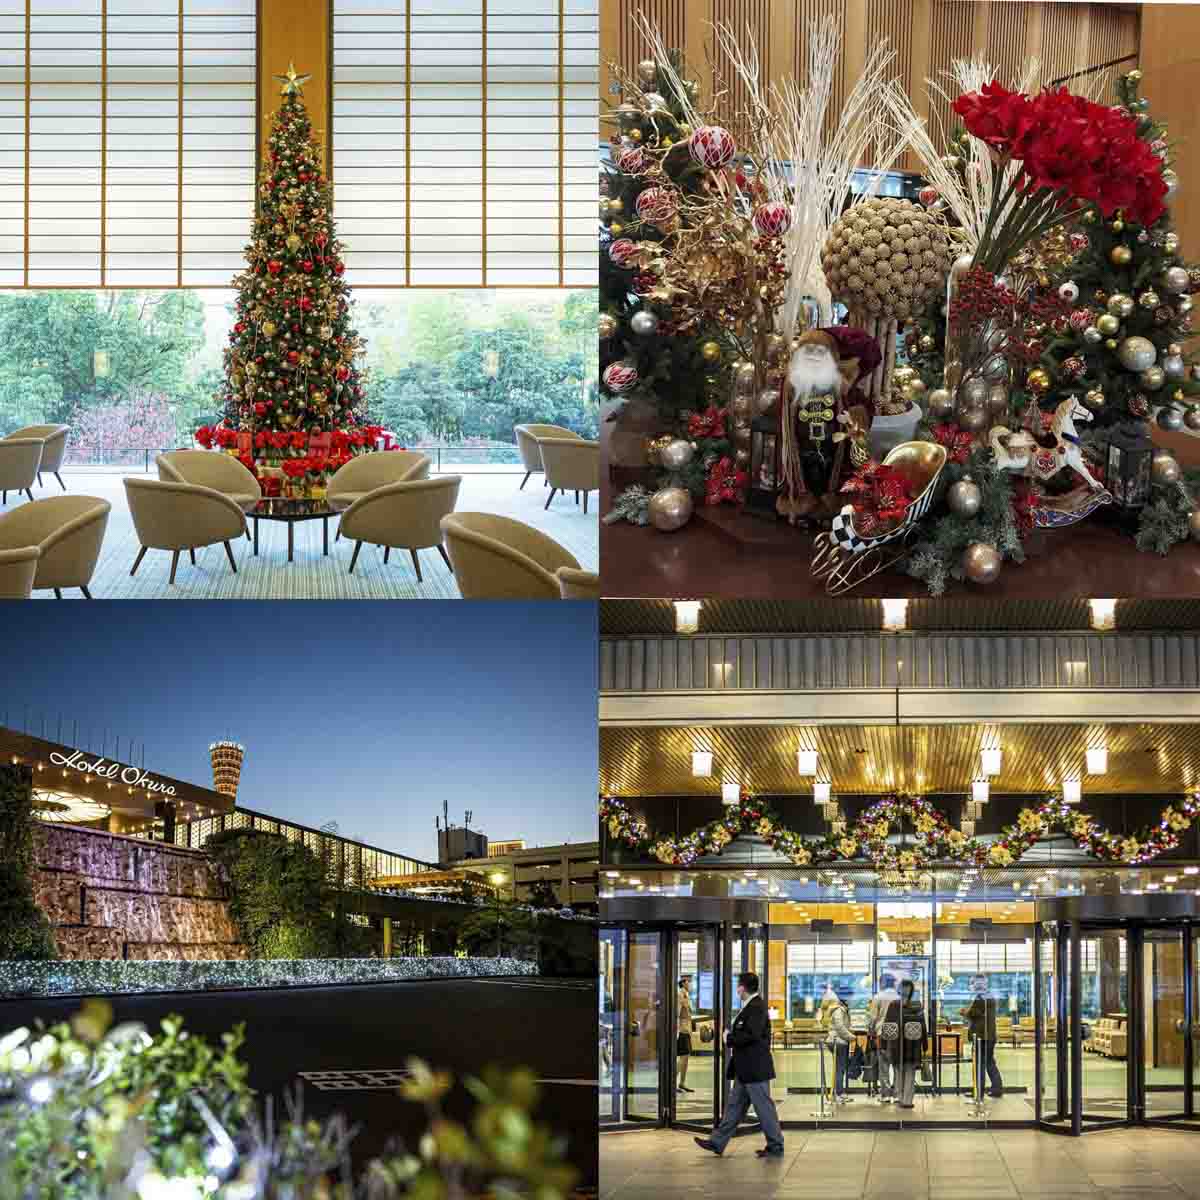 ホテルオークラ神戸で「クリスマスツリー点灯式」開催 [画像]